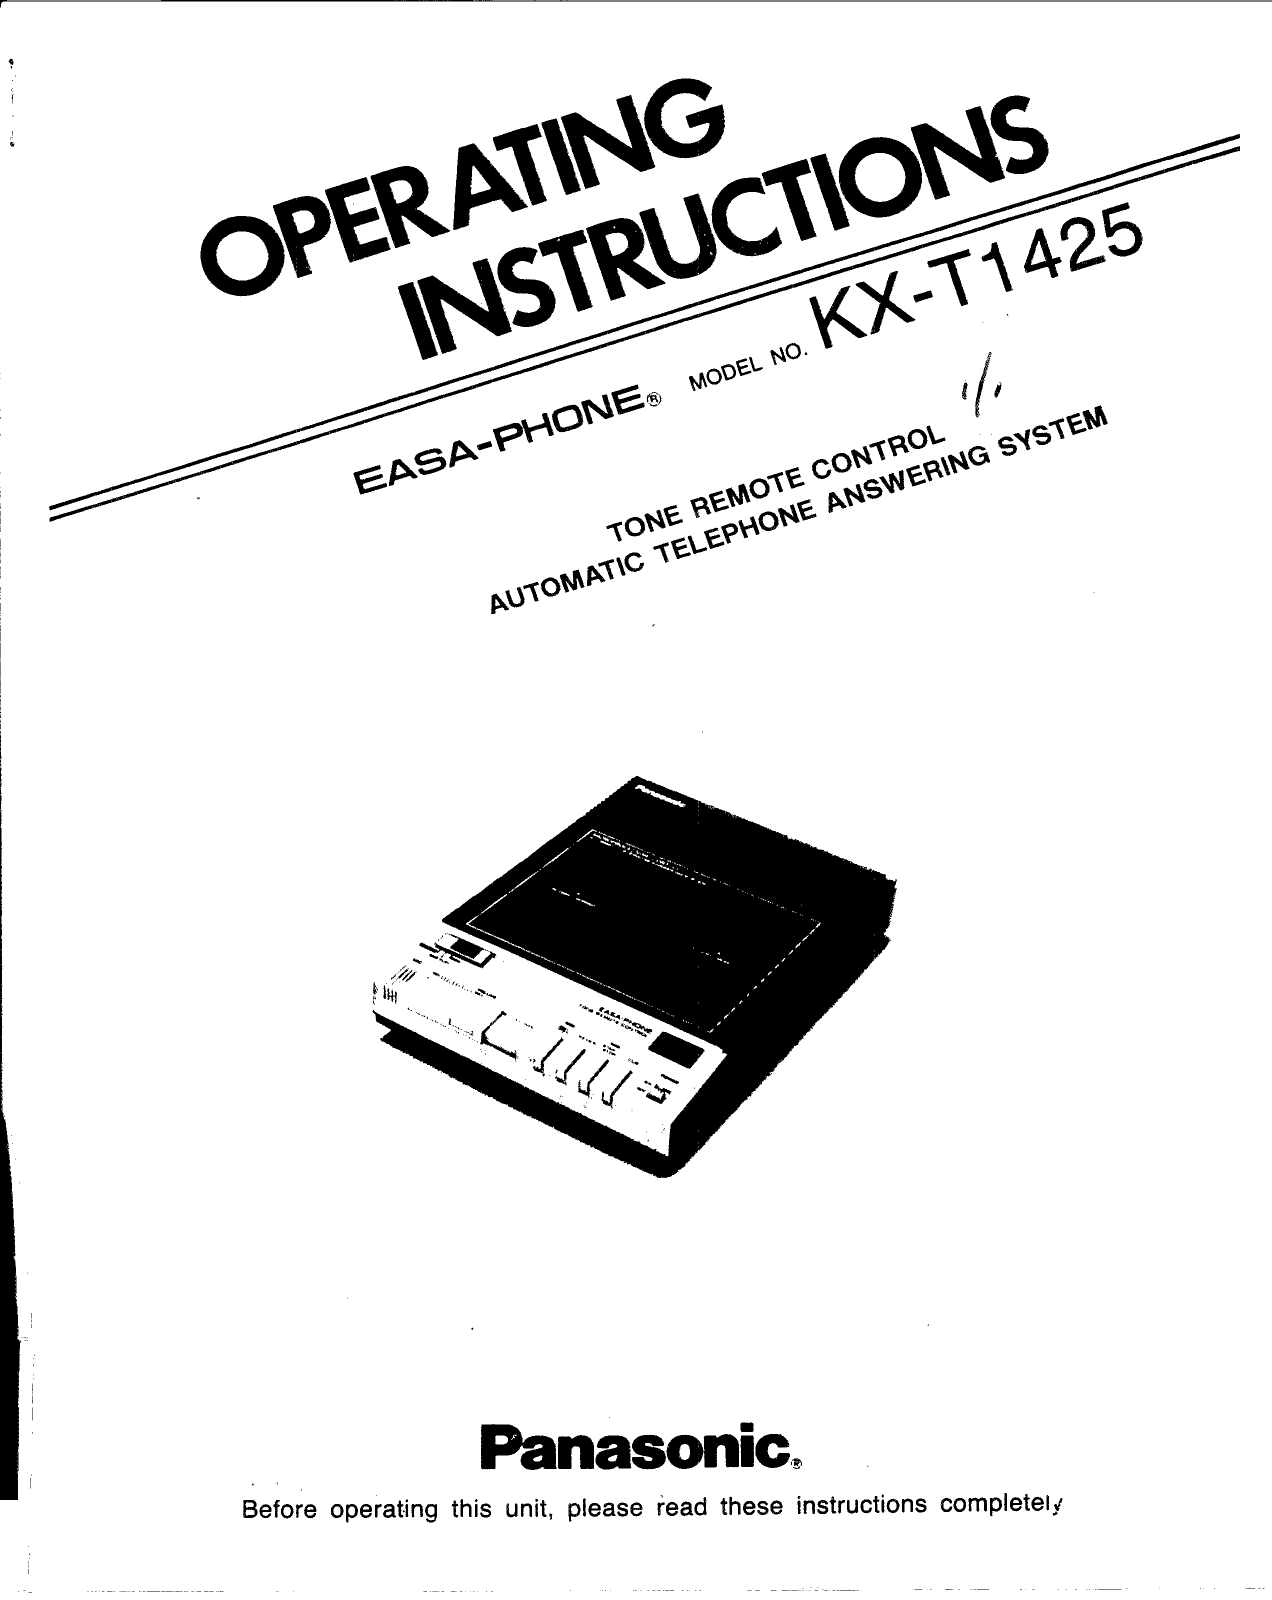 Panasonic kx-t1425 Operation Manual